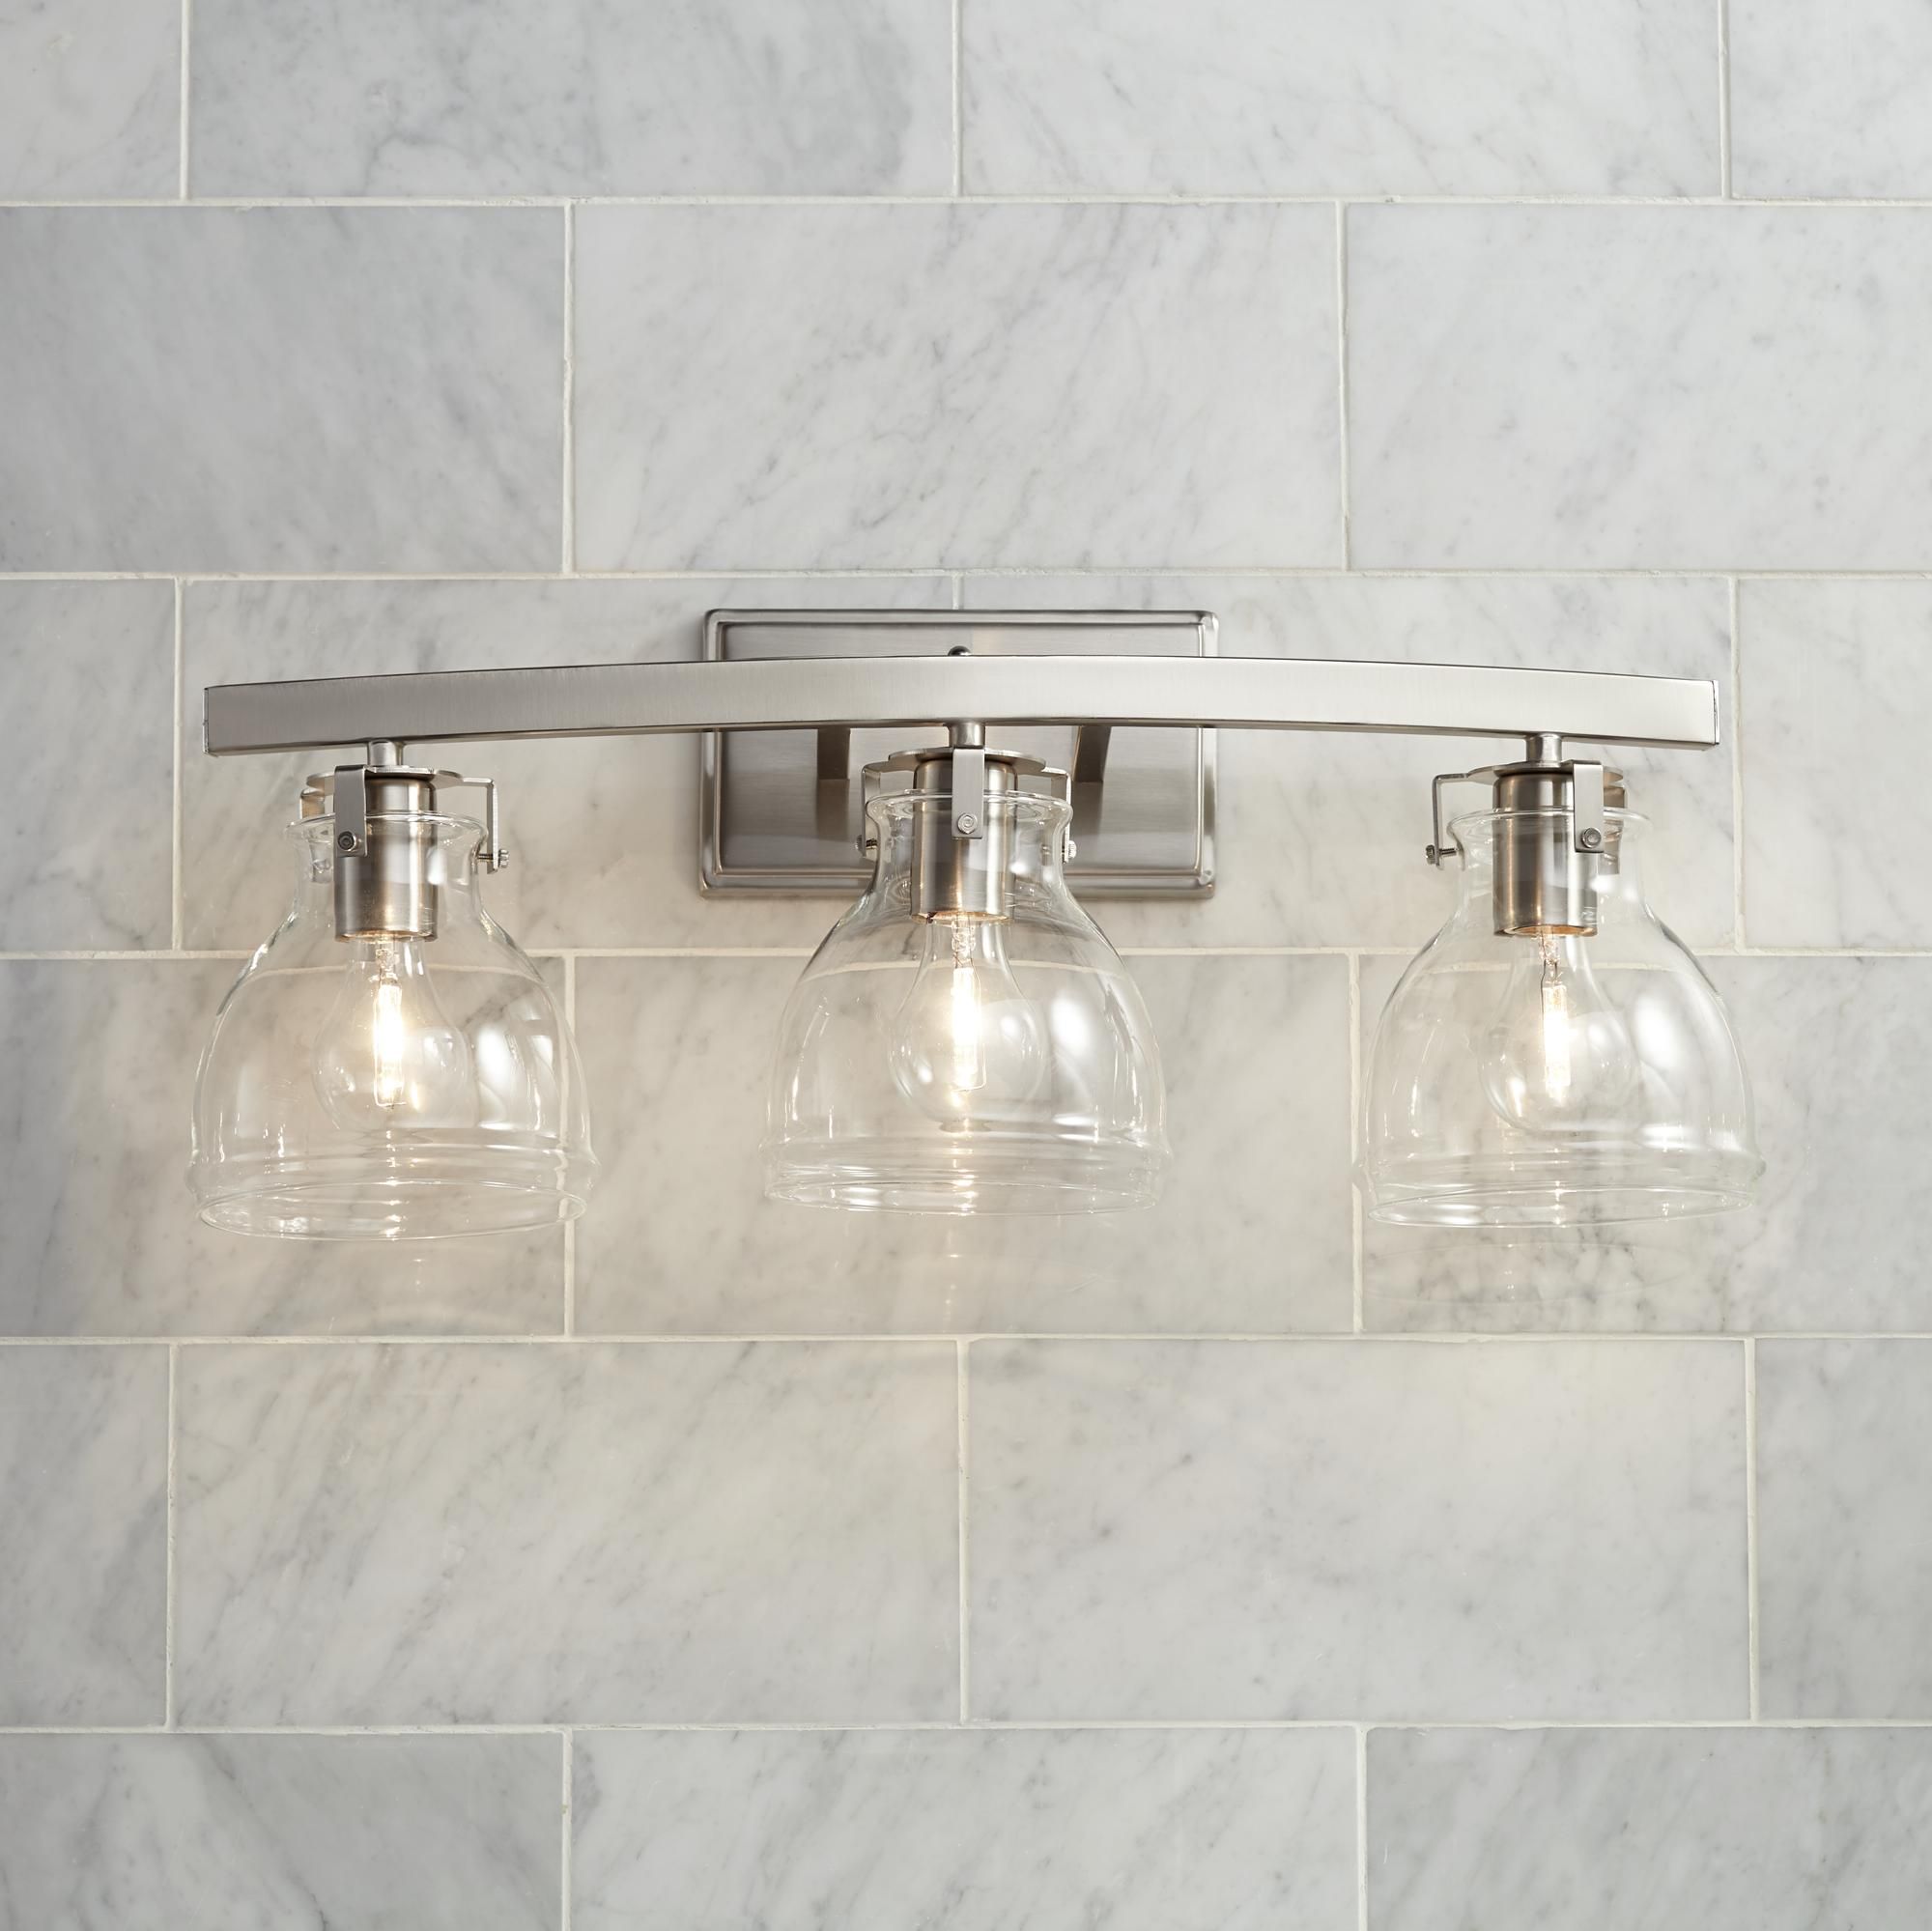 20 Nickel Bathroom Wall Light Fixtures, Bathroom Lighting Fixtures Brushed Nickel